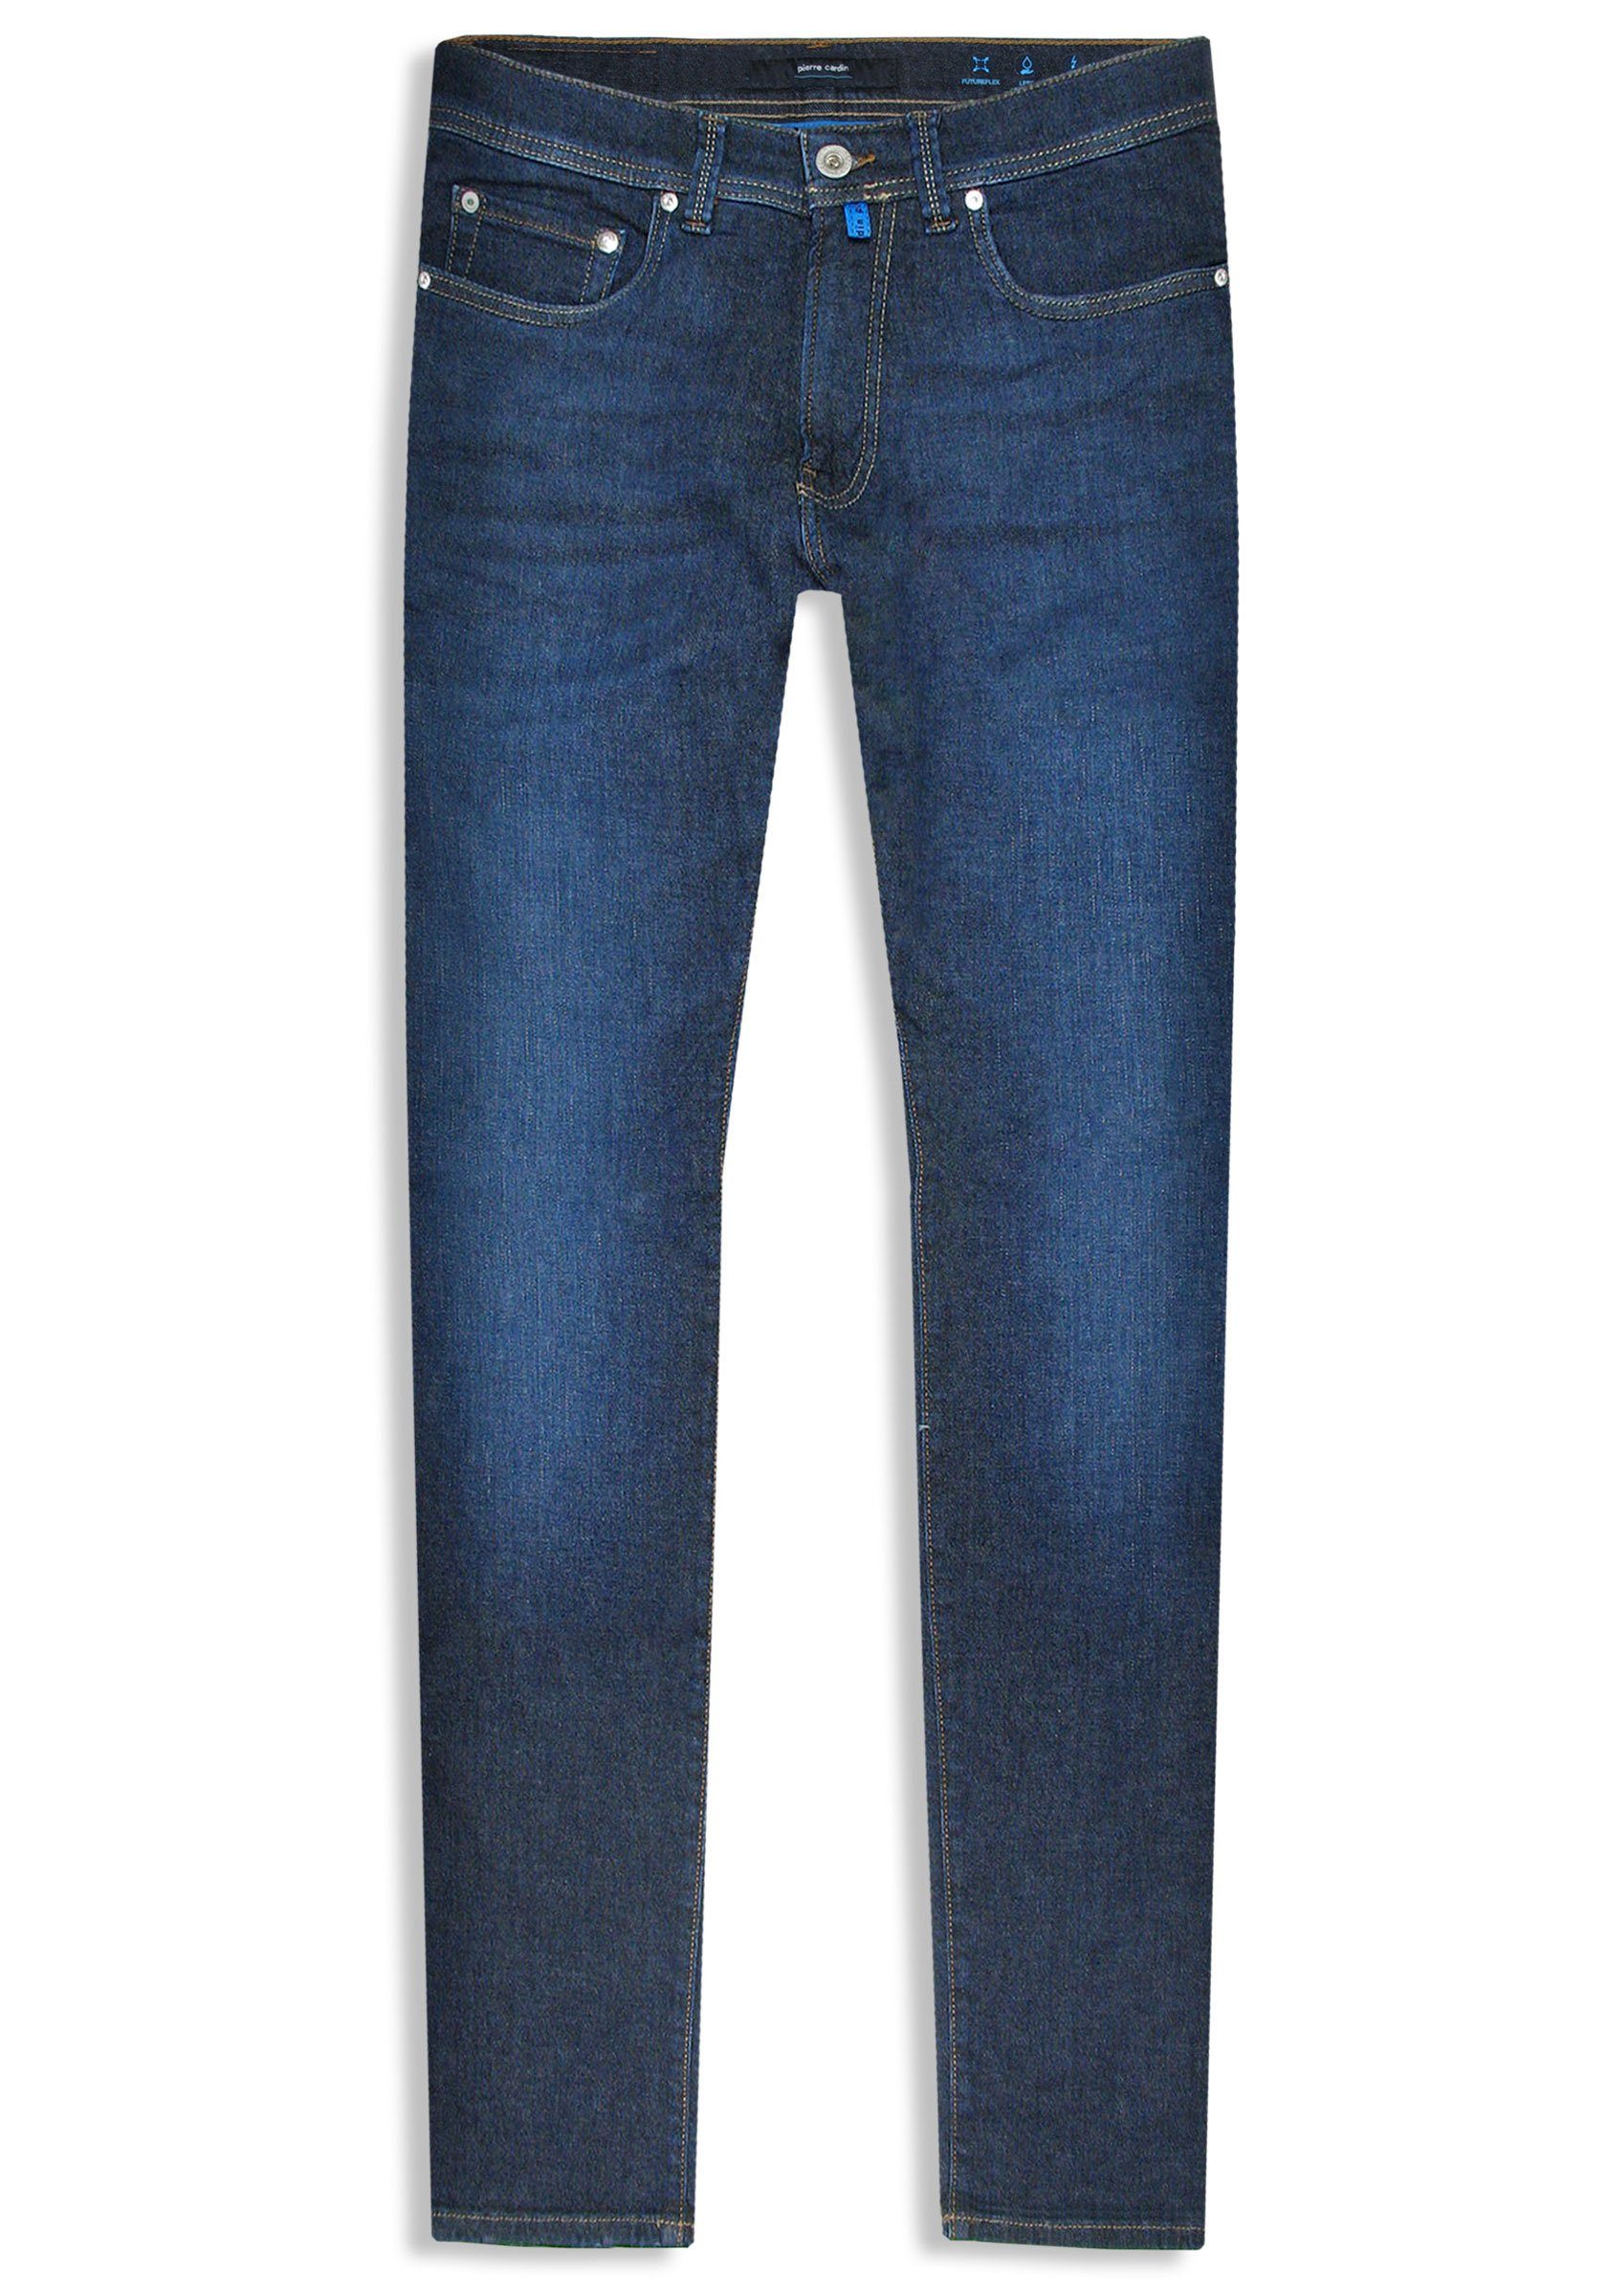 Pierre Cardin 5-Pocket-Jeans Lyon Tapered Futureflex Stretch Denim,  Mittelschwerer, elastischer Denim für das ganze Jahr geeignet